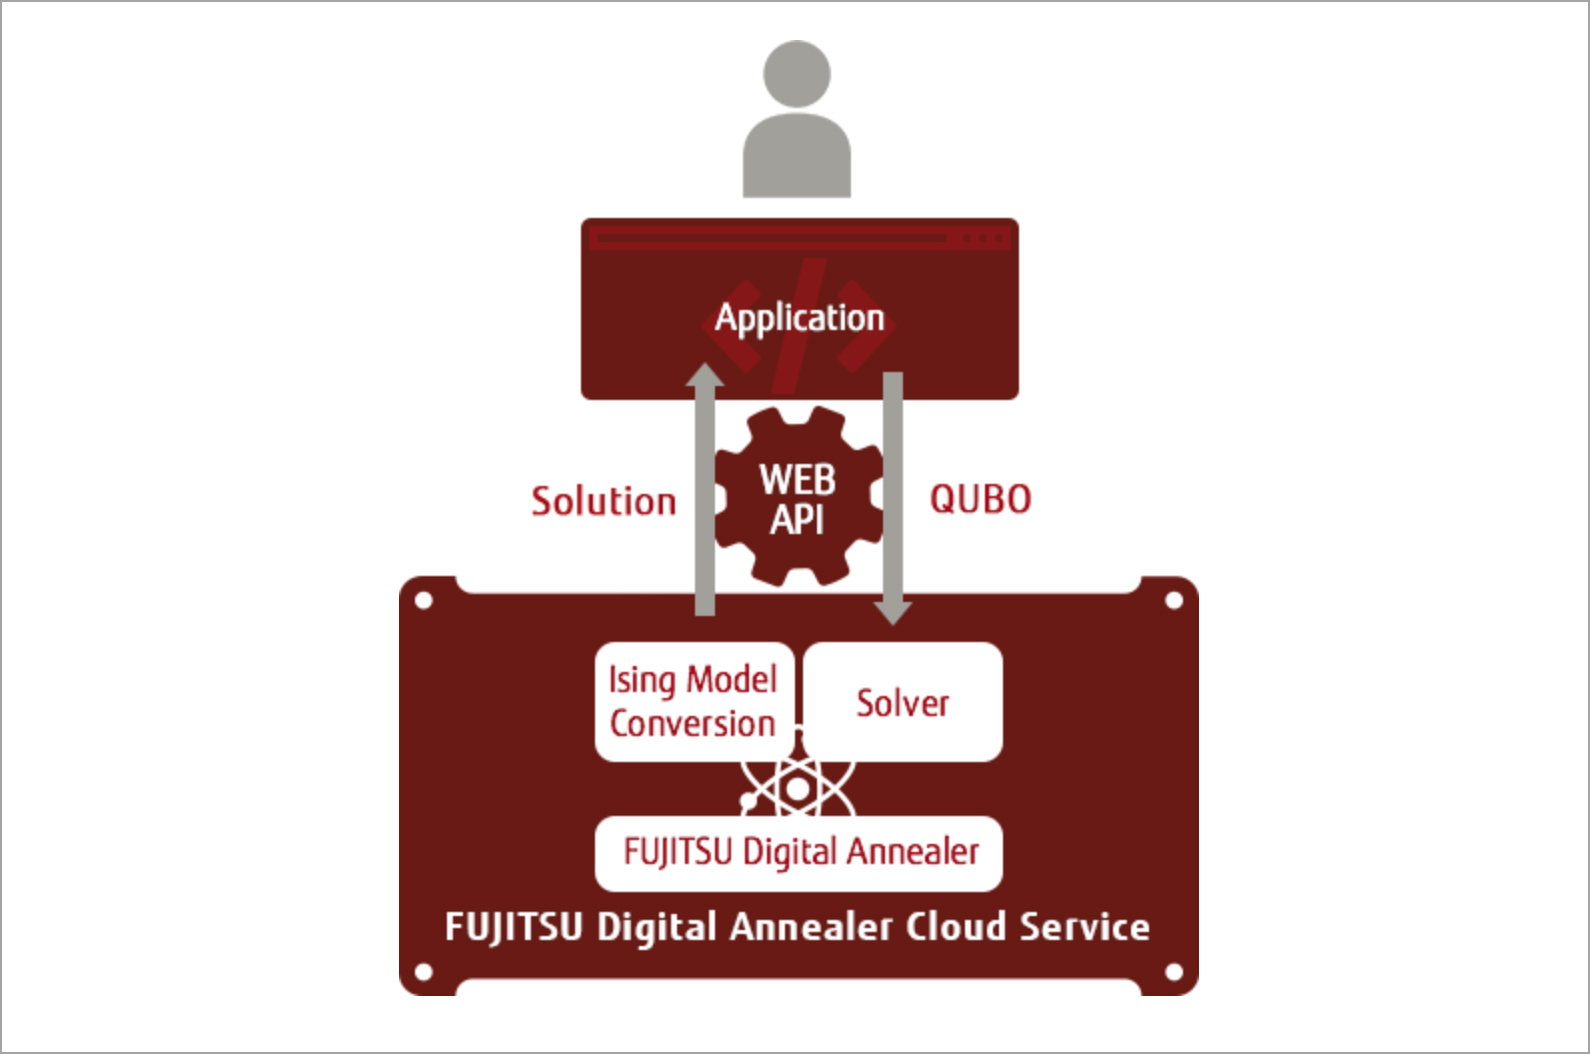 Fujitsu Digital Annealer Cloud service